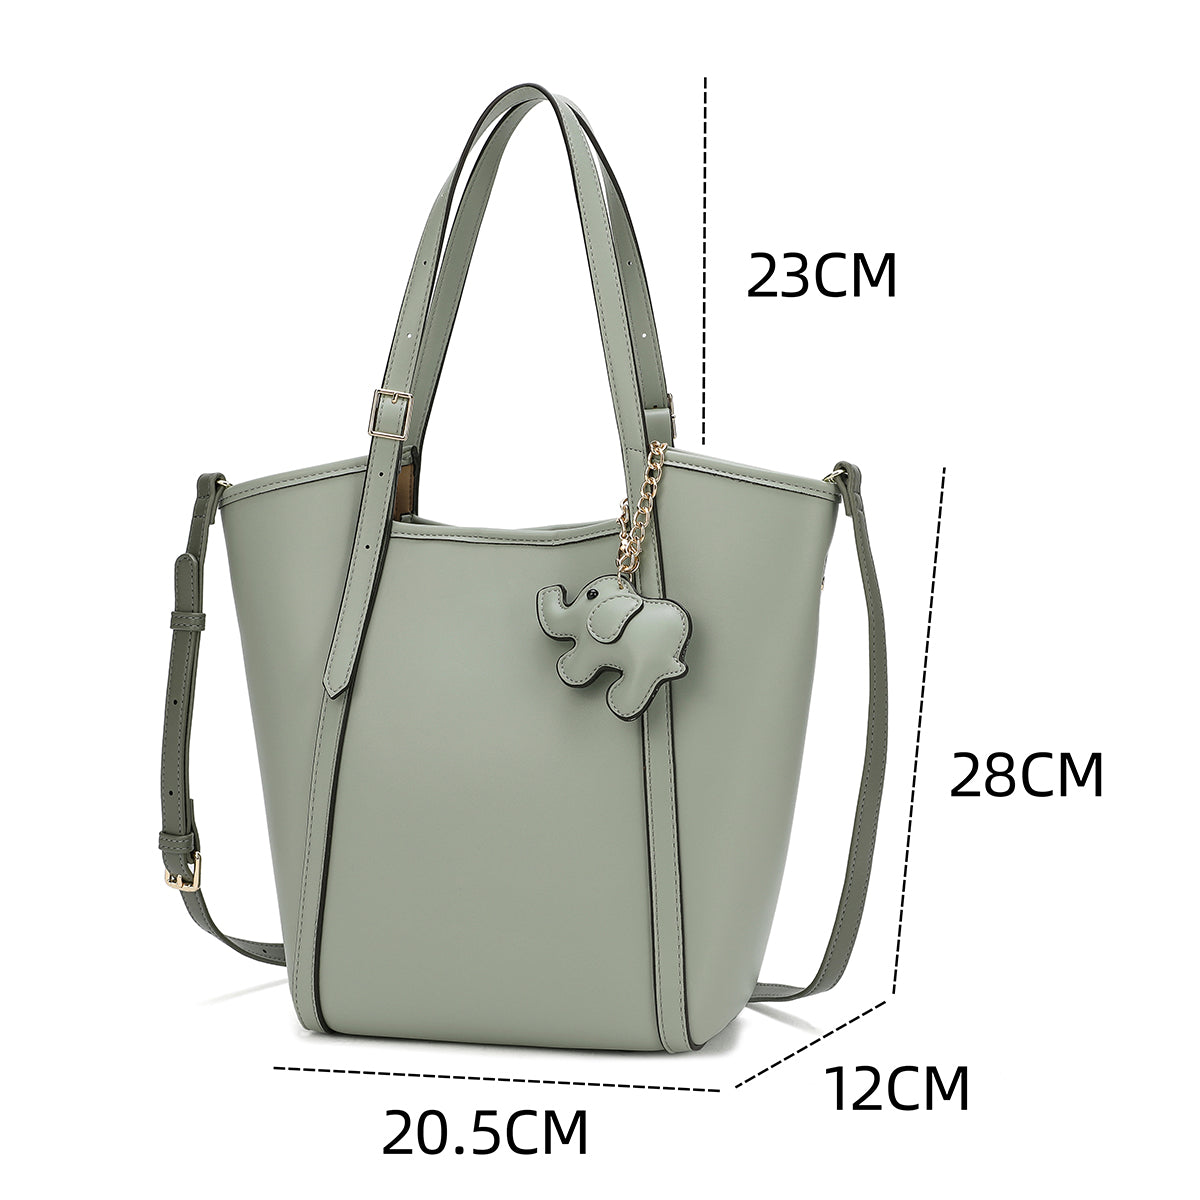 حقيبة يد واسعة بتصميم كلاسيكي مميز متوفرة بلونين